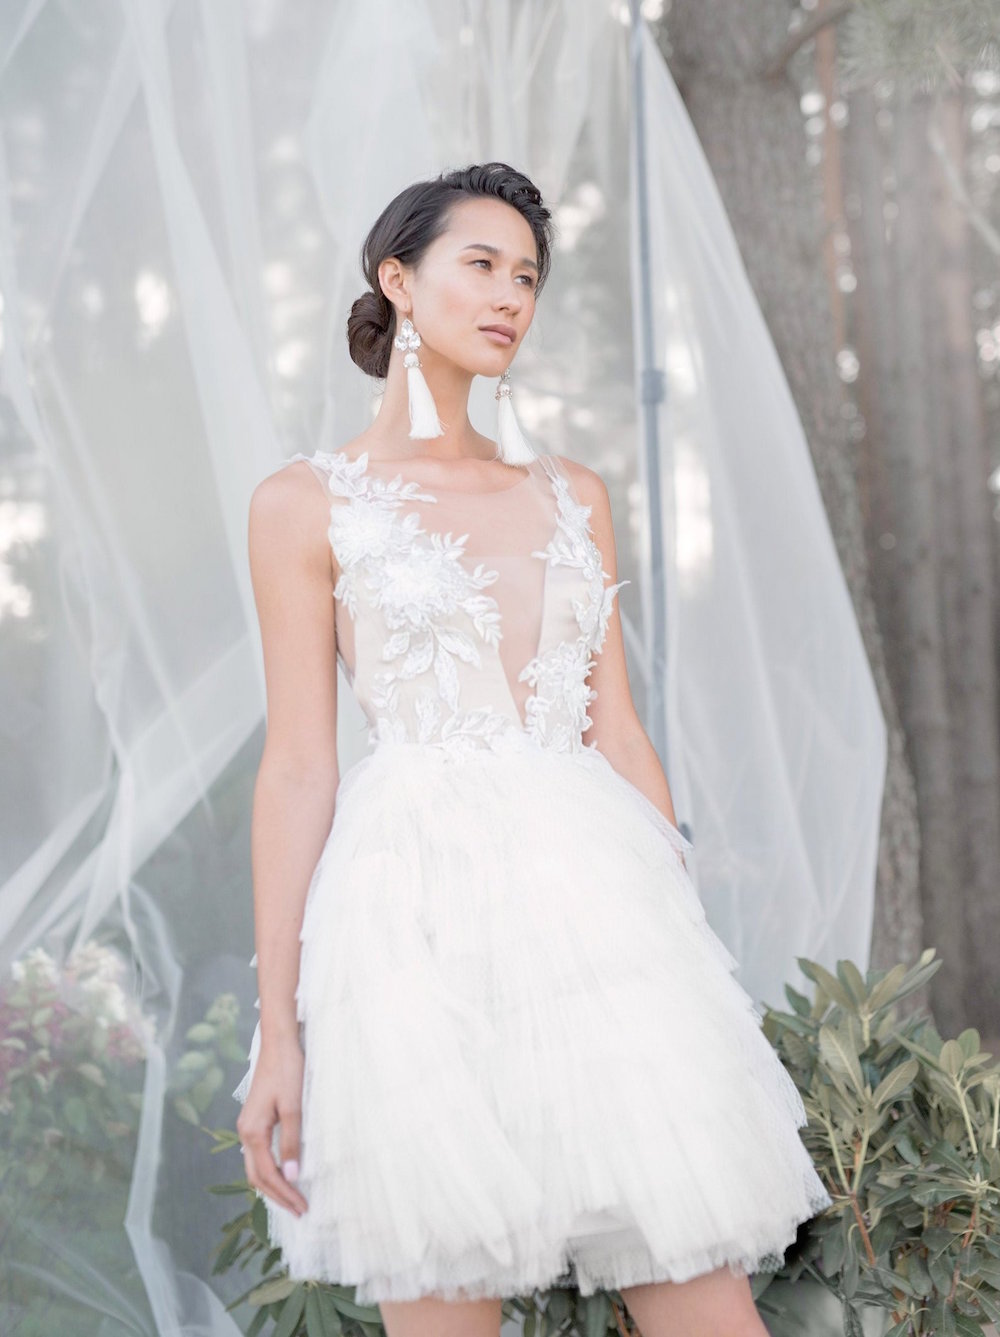 https://southboundbride.com/wp-content/uploads/2015/10/007c-short-wedding-dresses-etsy-southboundbride.jpg